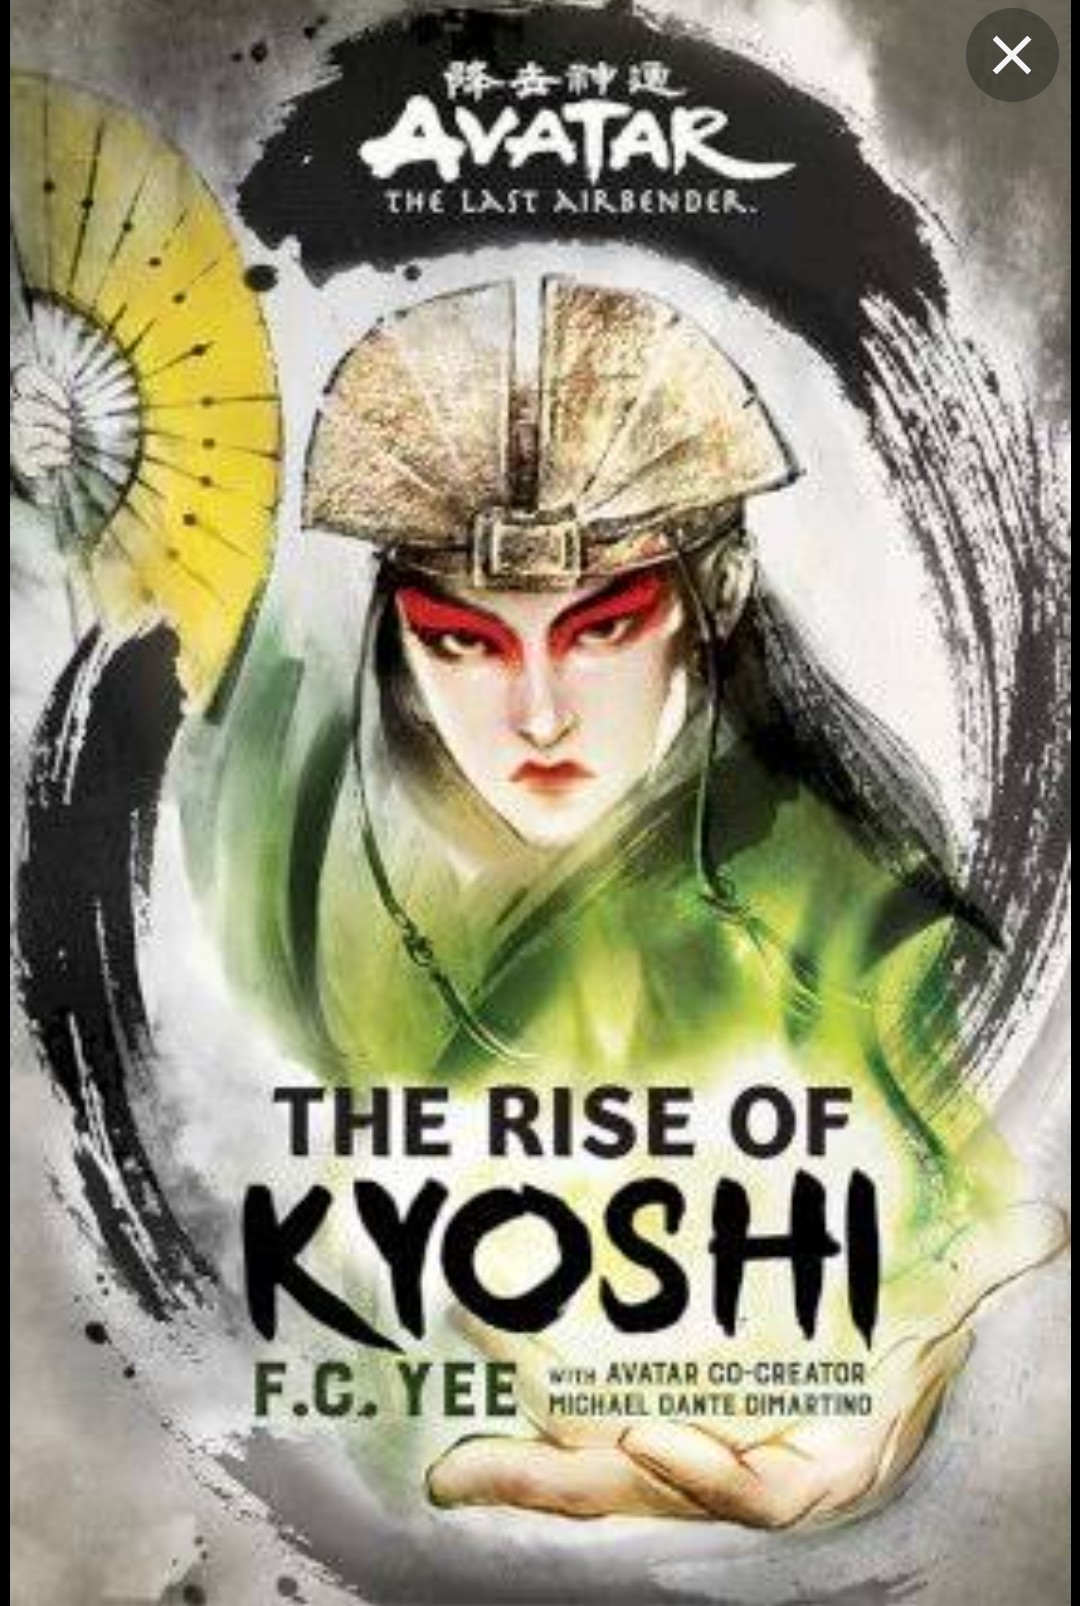 תרגום לעברית של הספר של אווטאר קיושי (the rise of kyoshi 2019)